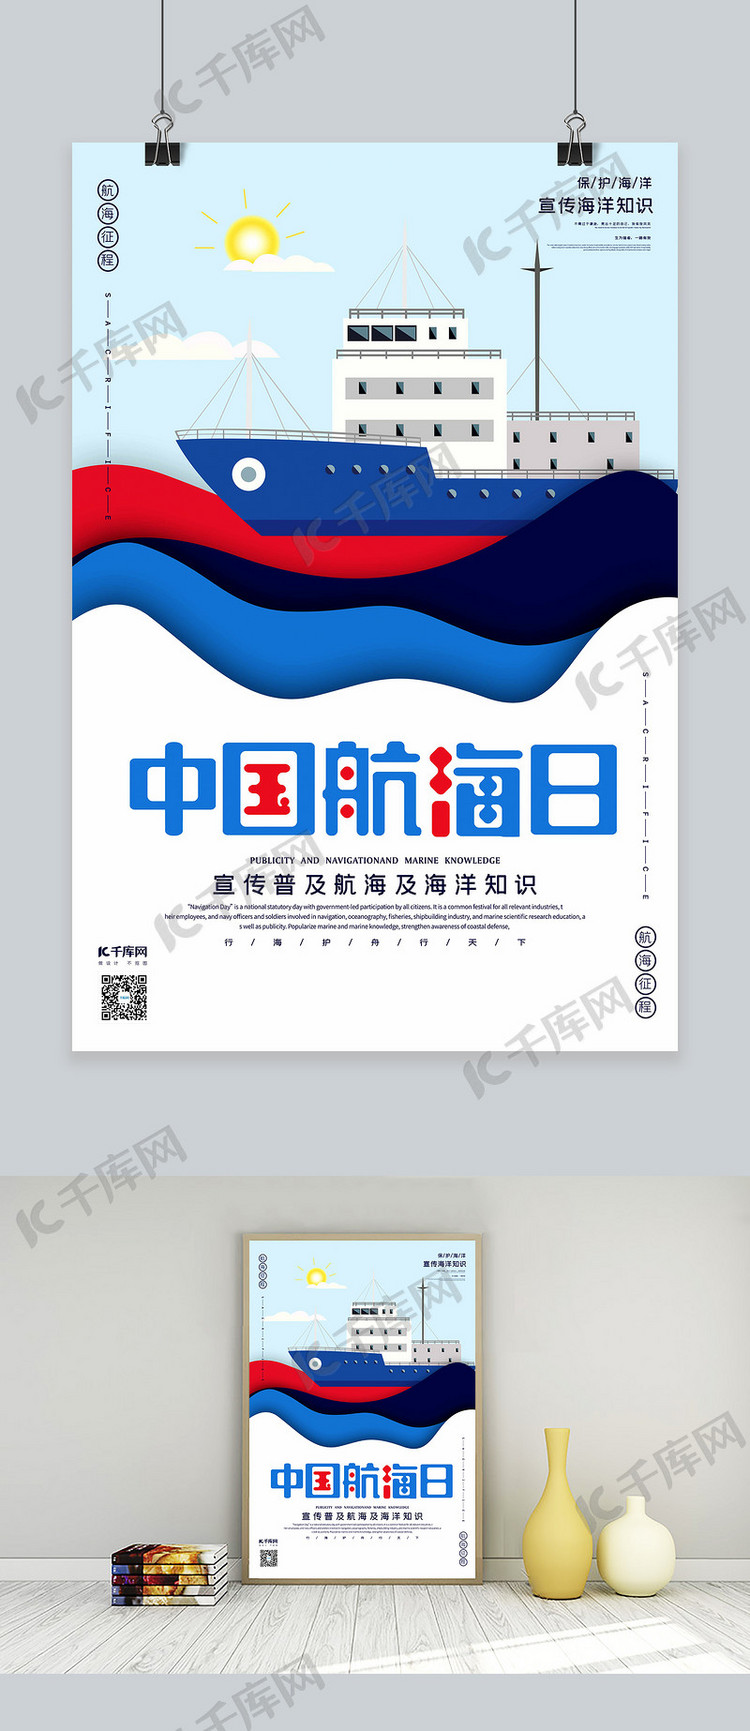 中国航海日红白蓝黑撞色立体剪纸风格海报